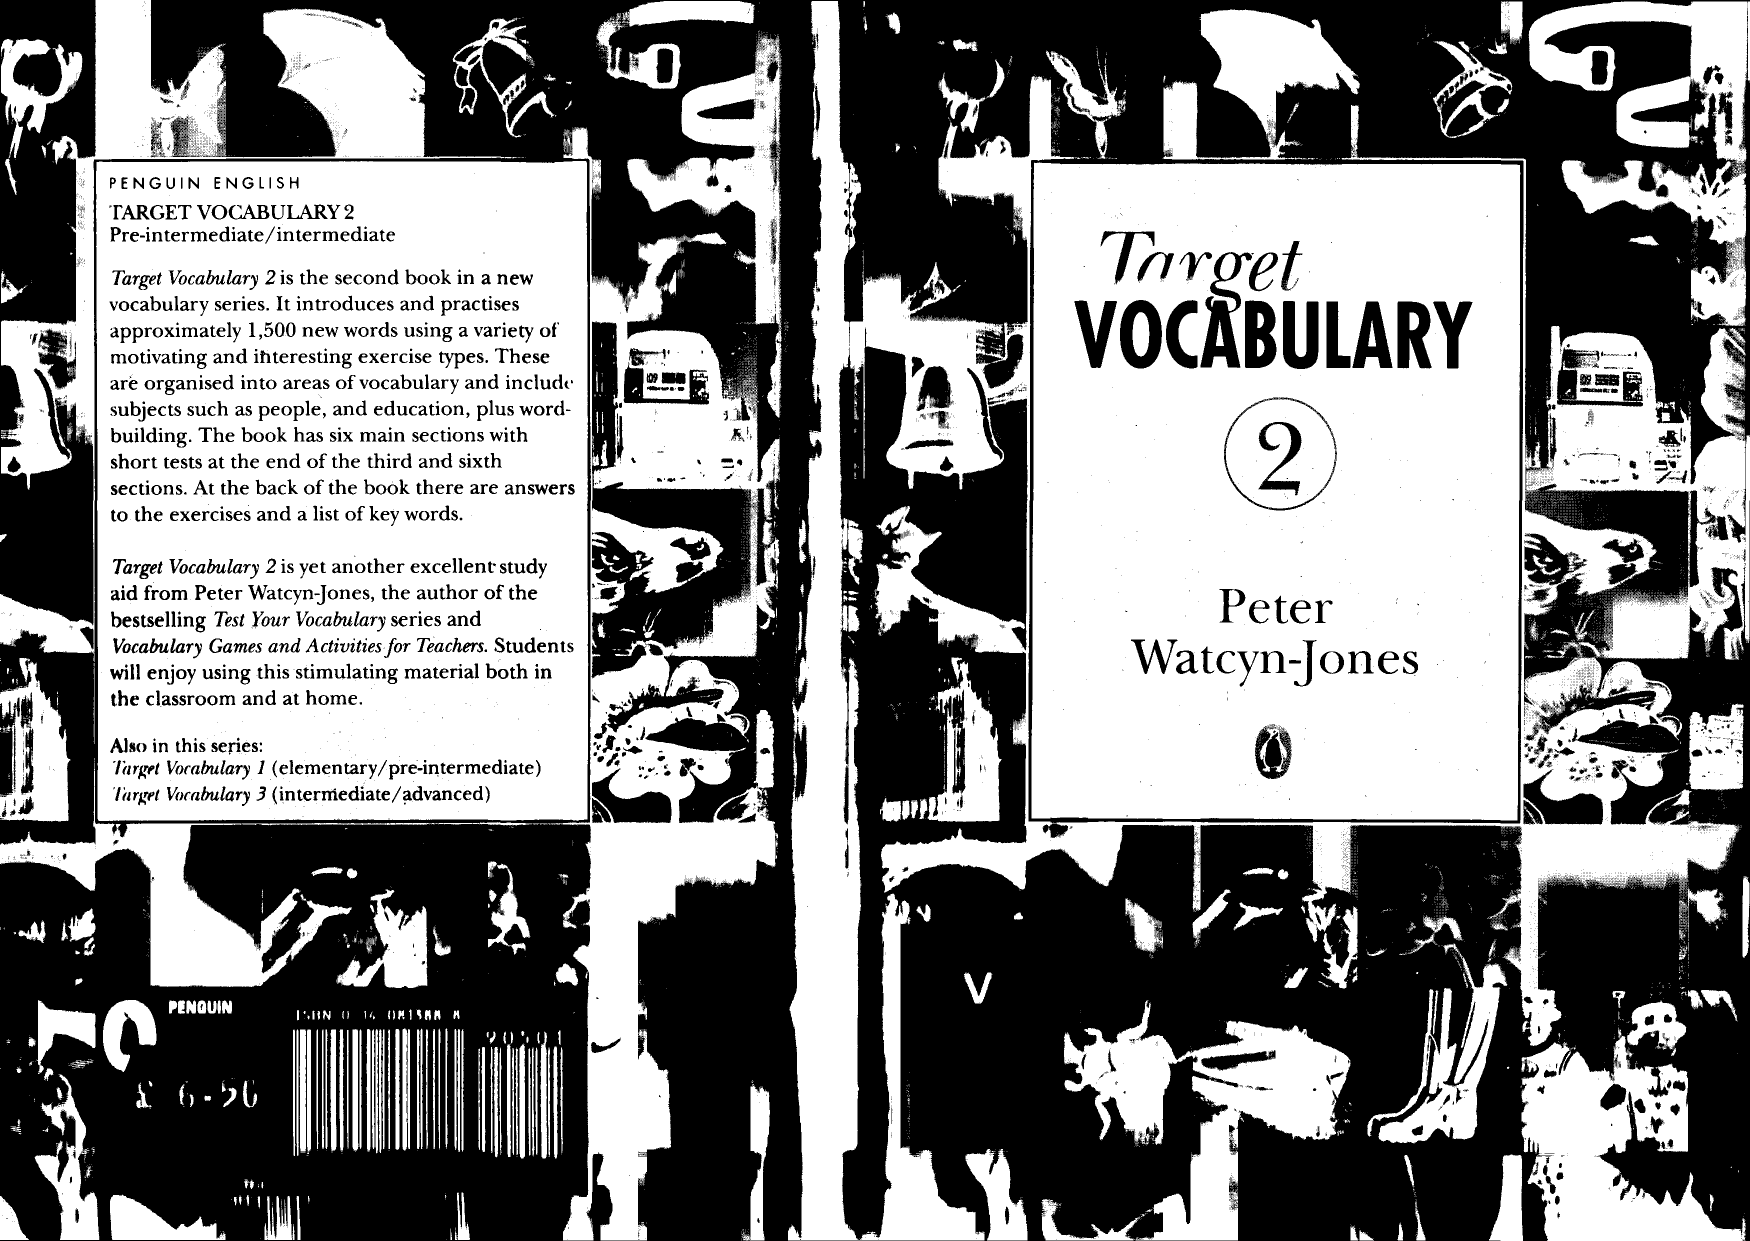 Target Vocabulary Peter Watcyn-Jones 1 и 2 часть купить.